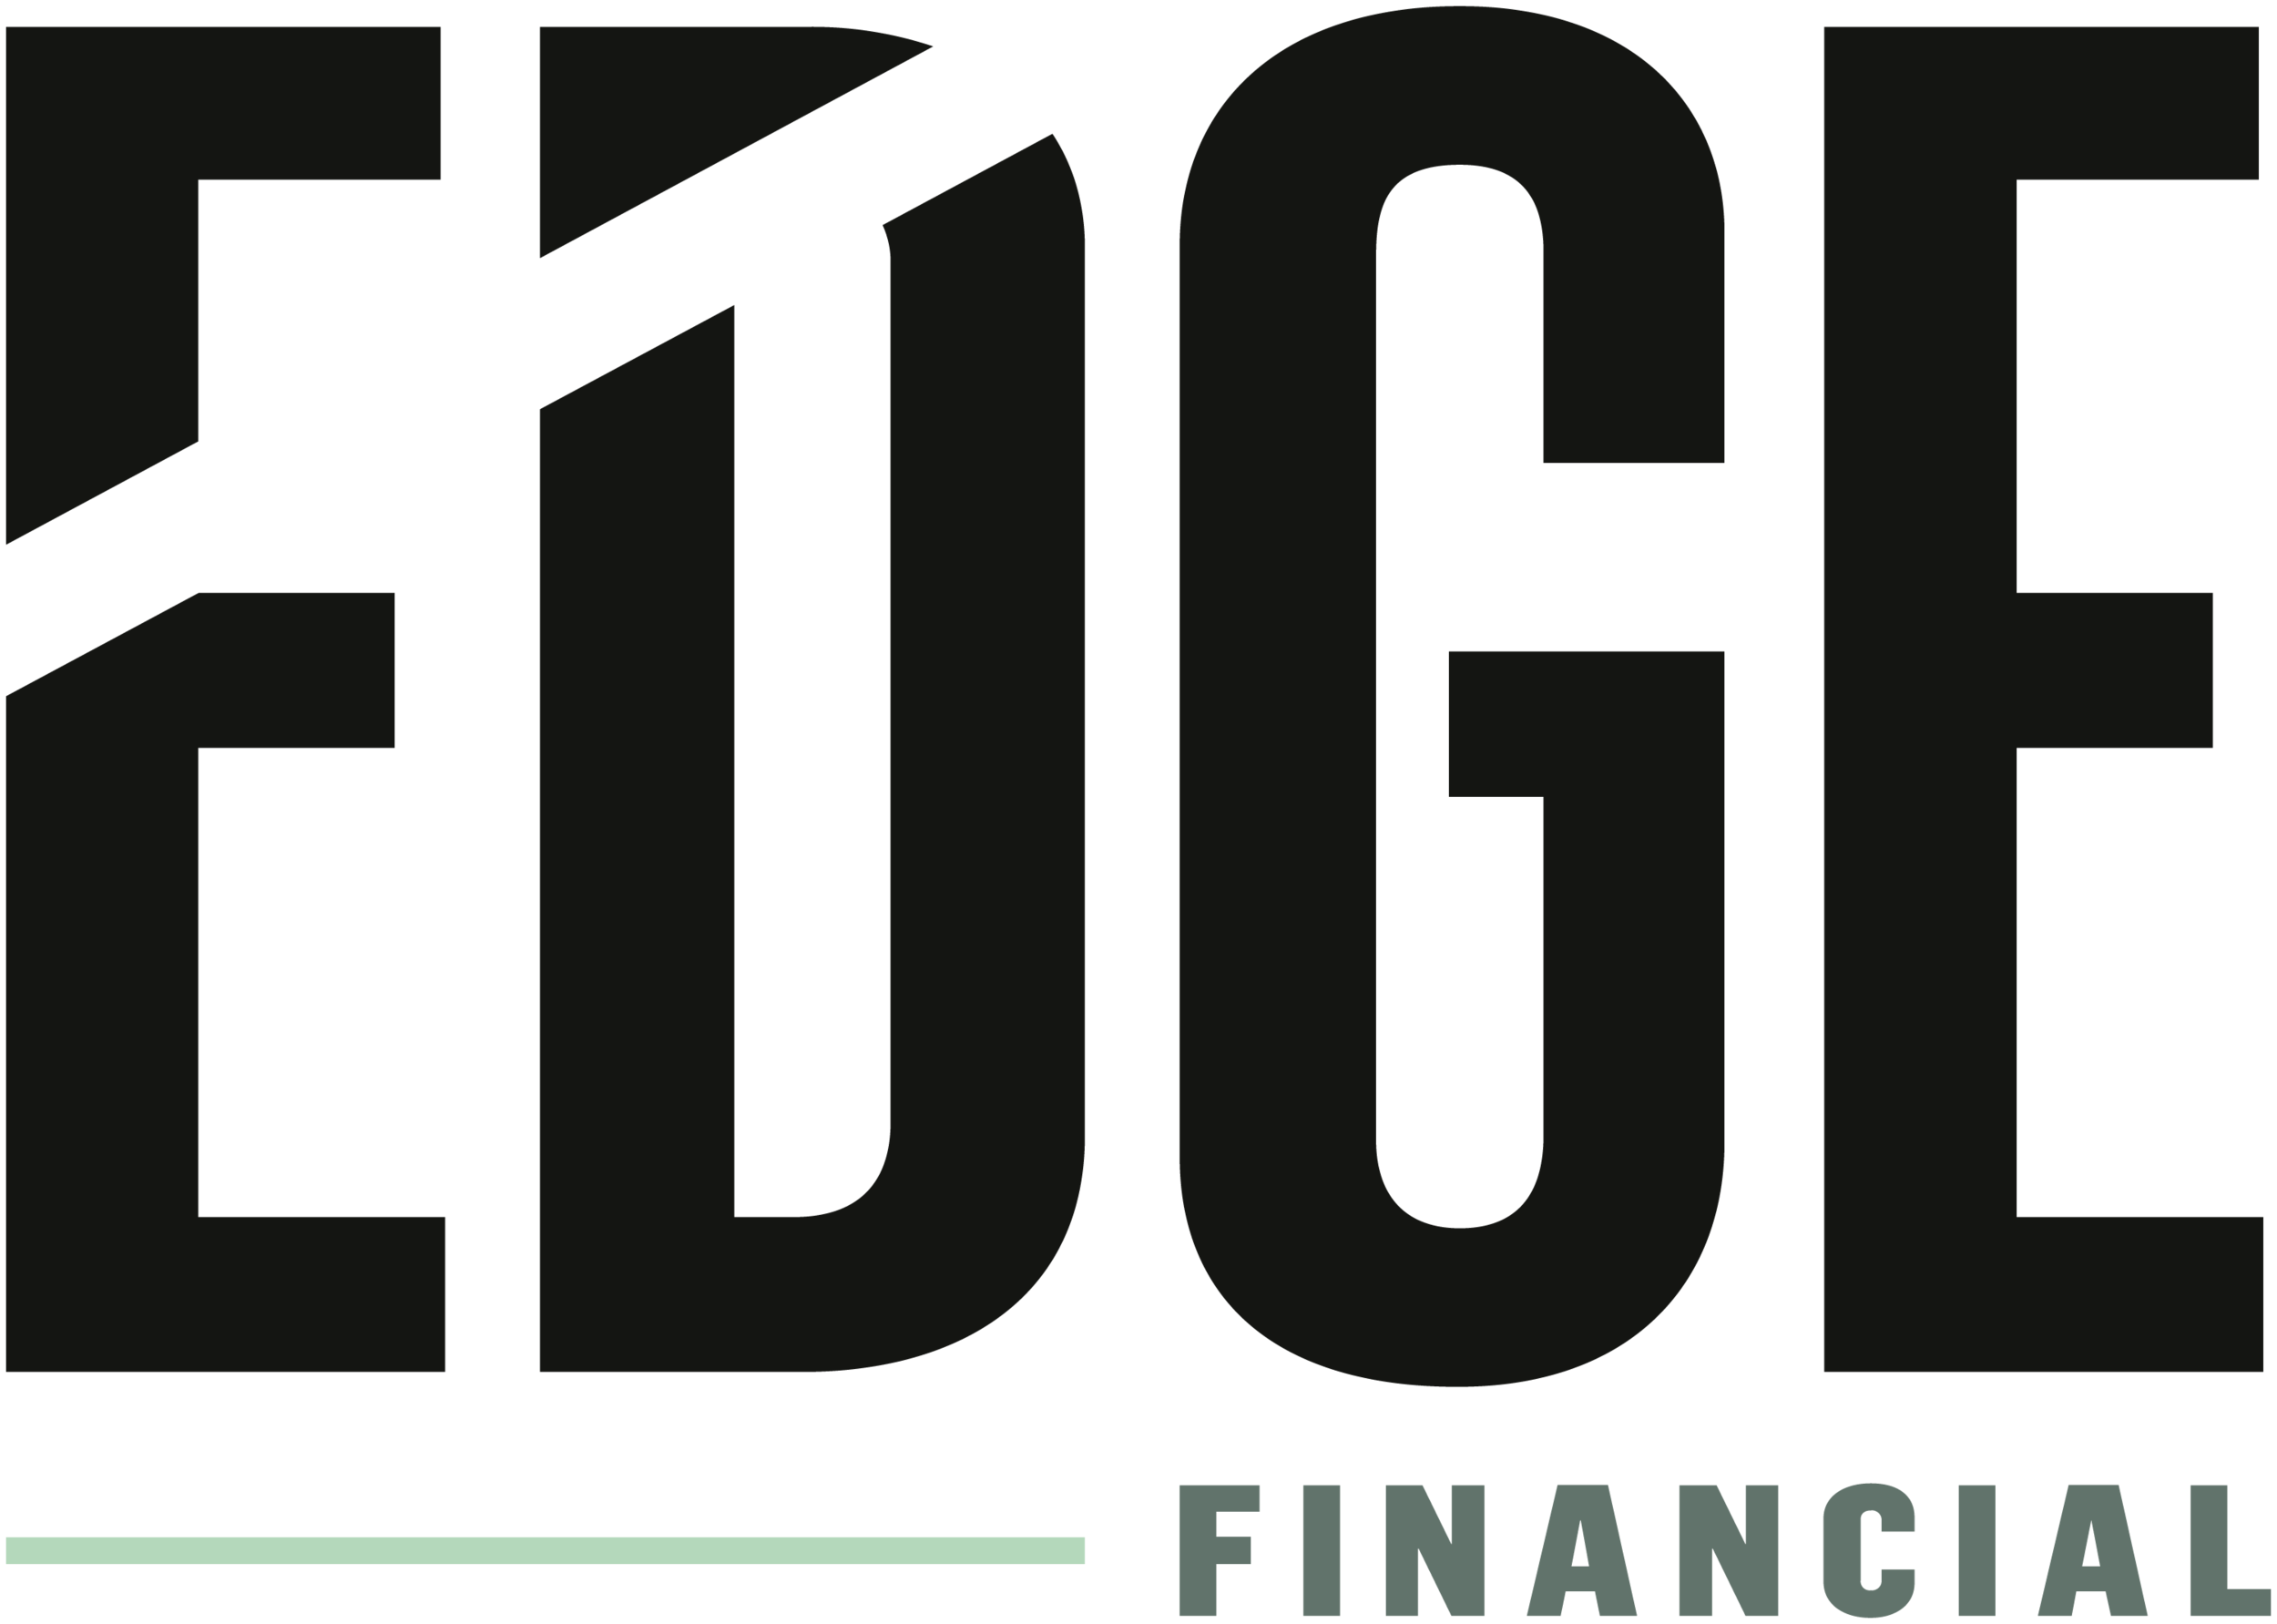 Edge Financial